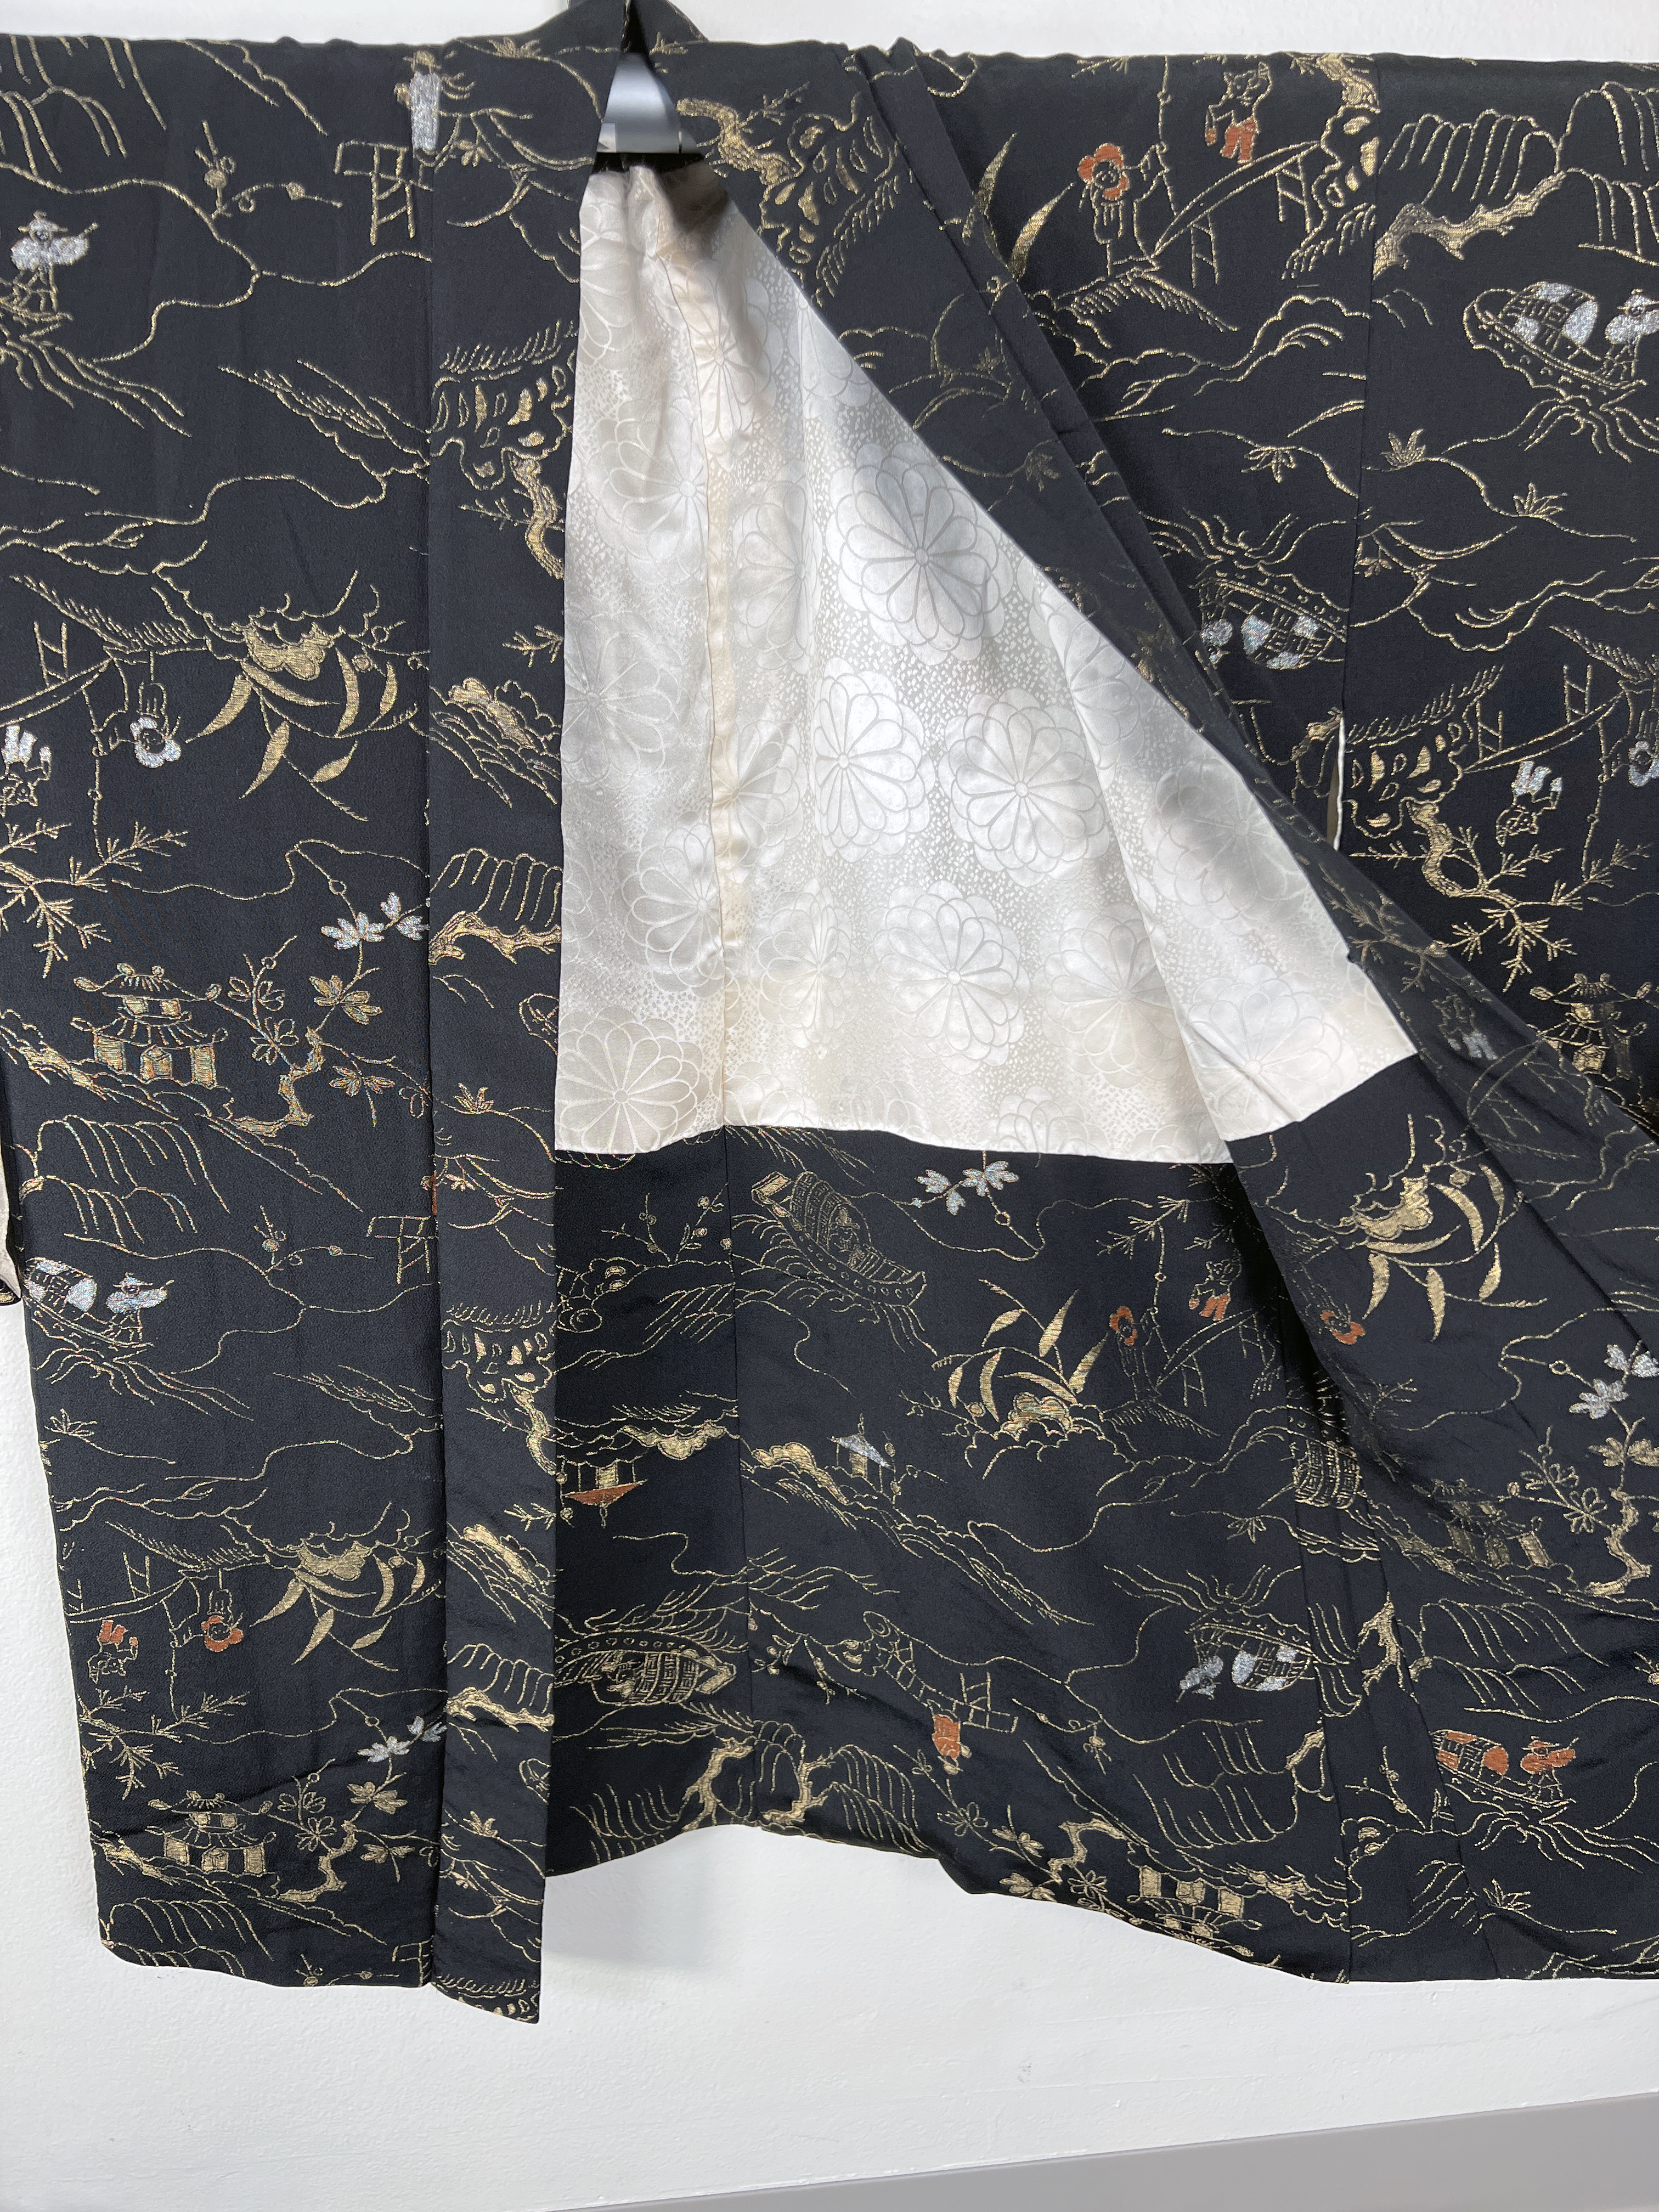 2 Vintage Japanese Kimonos Haoris image 5